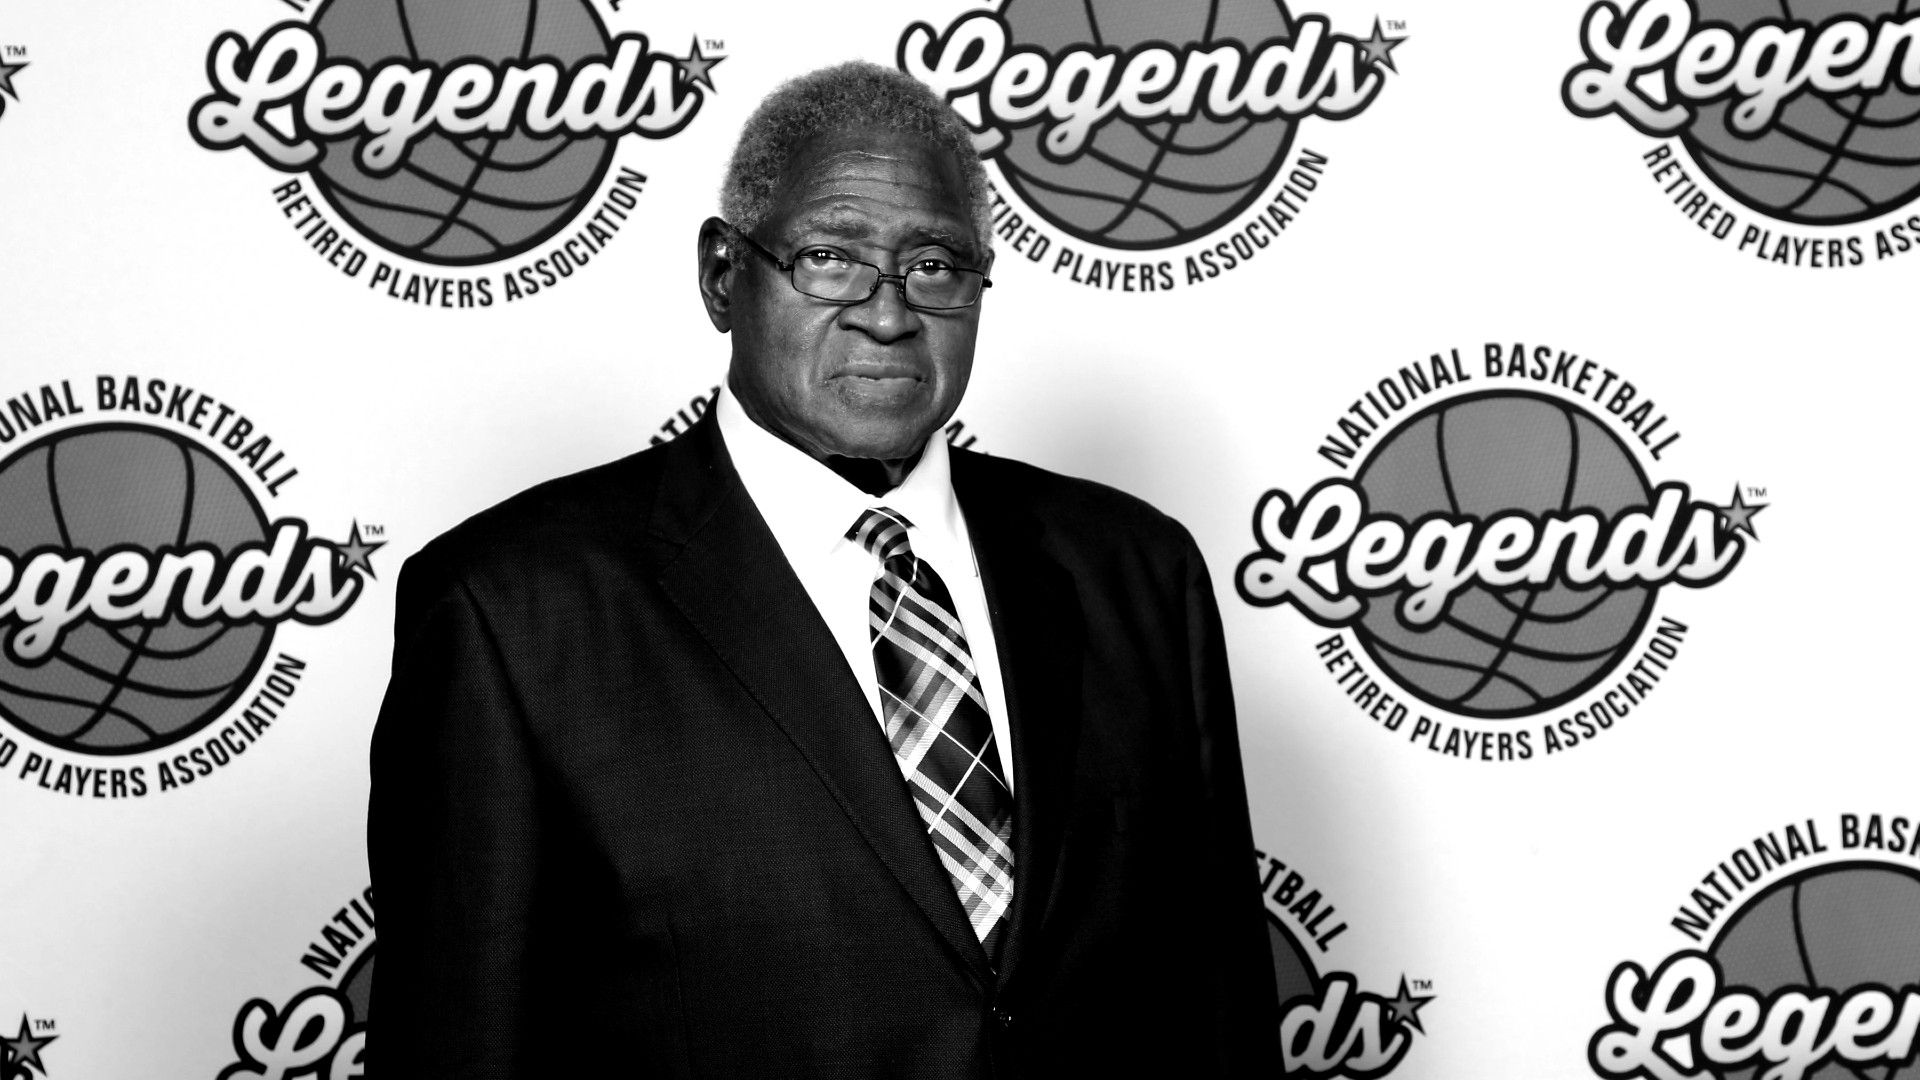 Meghalt az NBA legendája